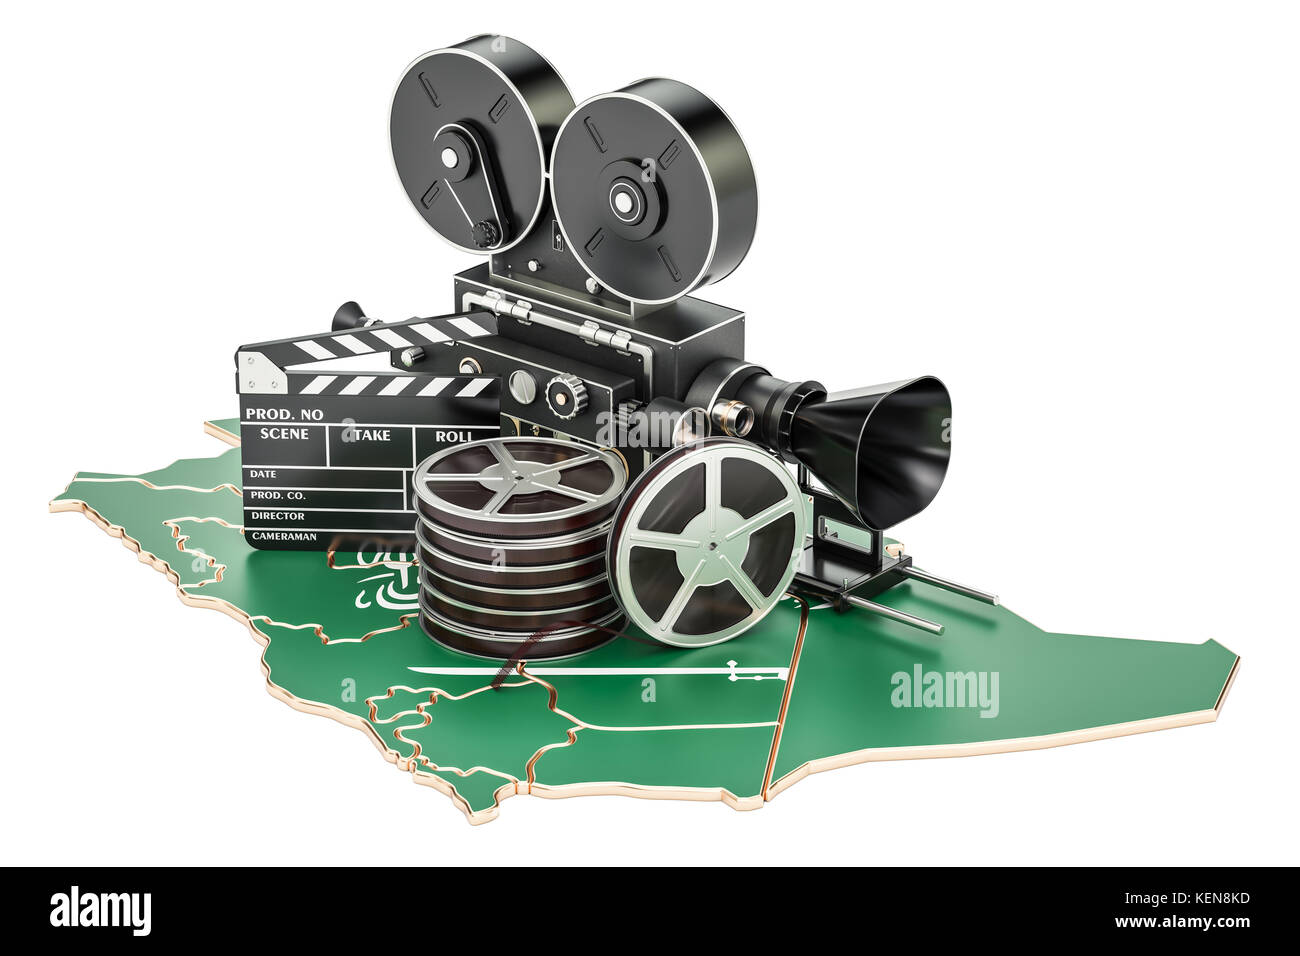 Saudi-arabien Kinematographie, Filmindustrie Konzept. 3D-Rendering auf weißem Hintergrund Stockfoto